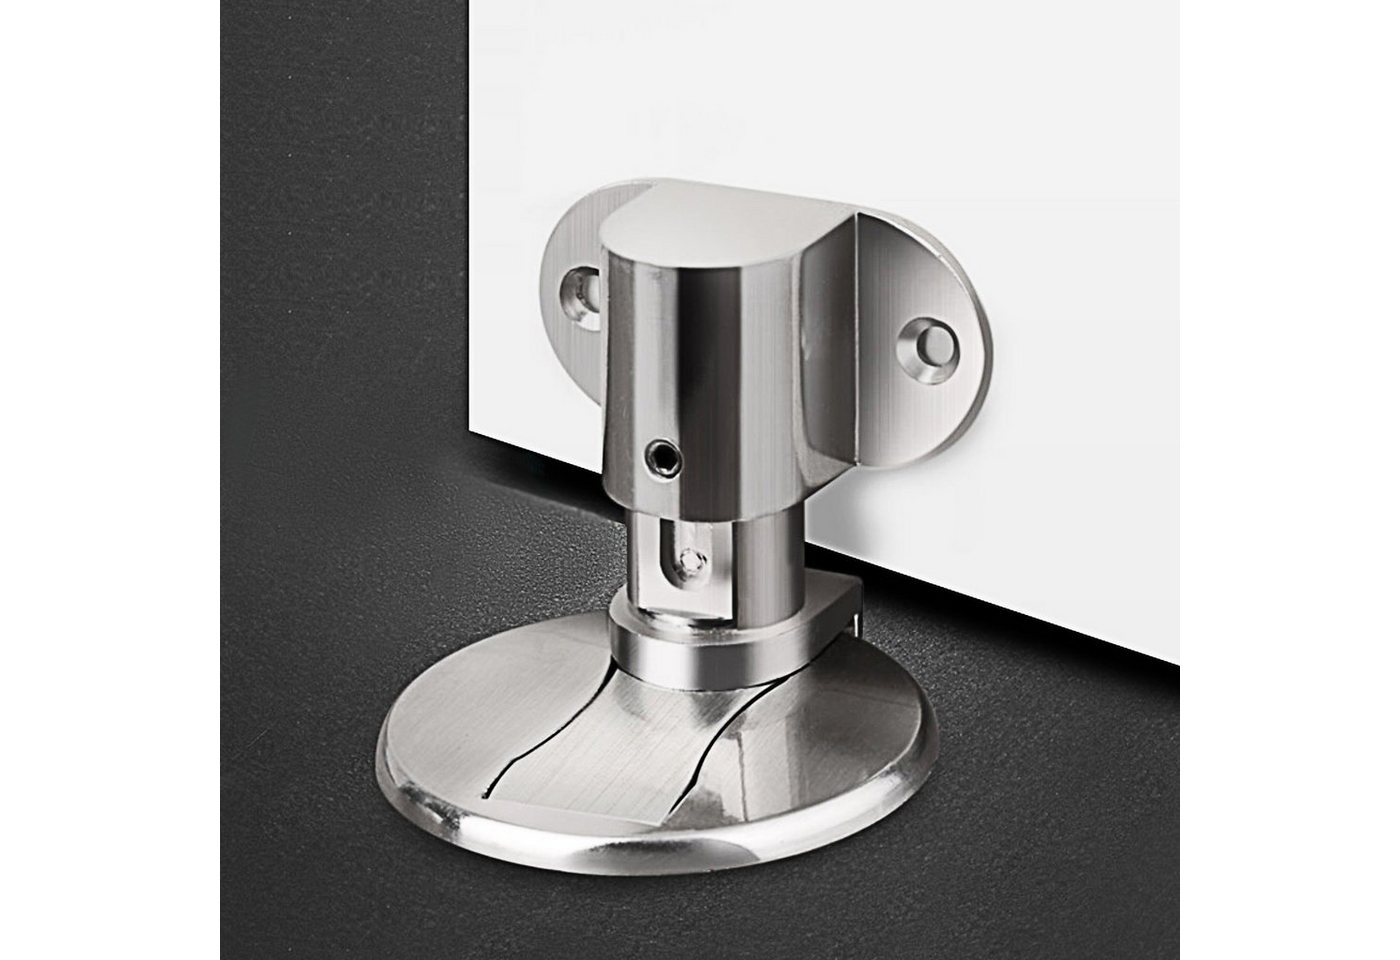 Ailiebe Design Türstopper (kleben oder bohren), Magnet Edelstahl selbstklebend höhenverstellbar Türfeststeller von Ailiebe Design